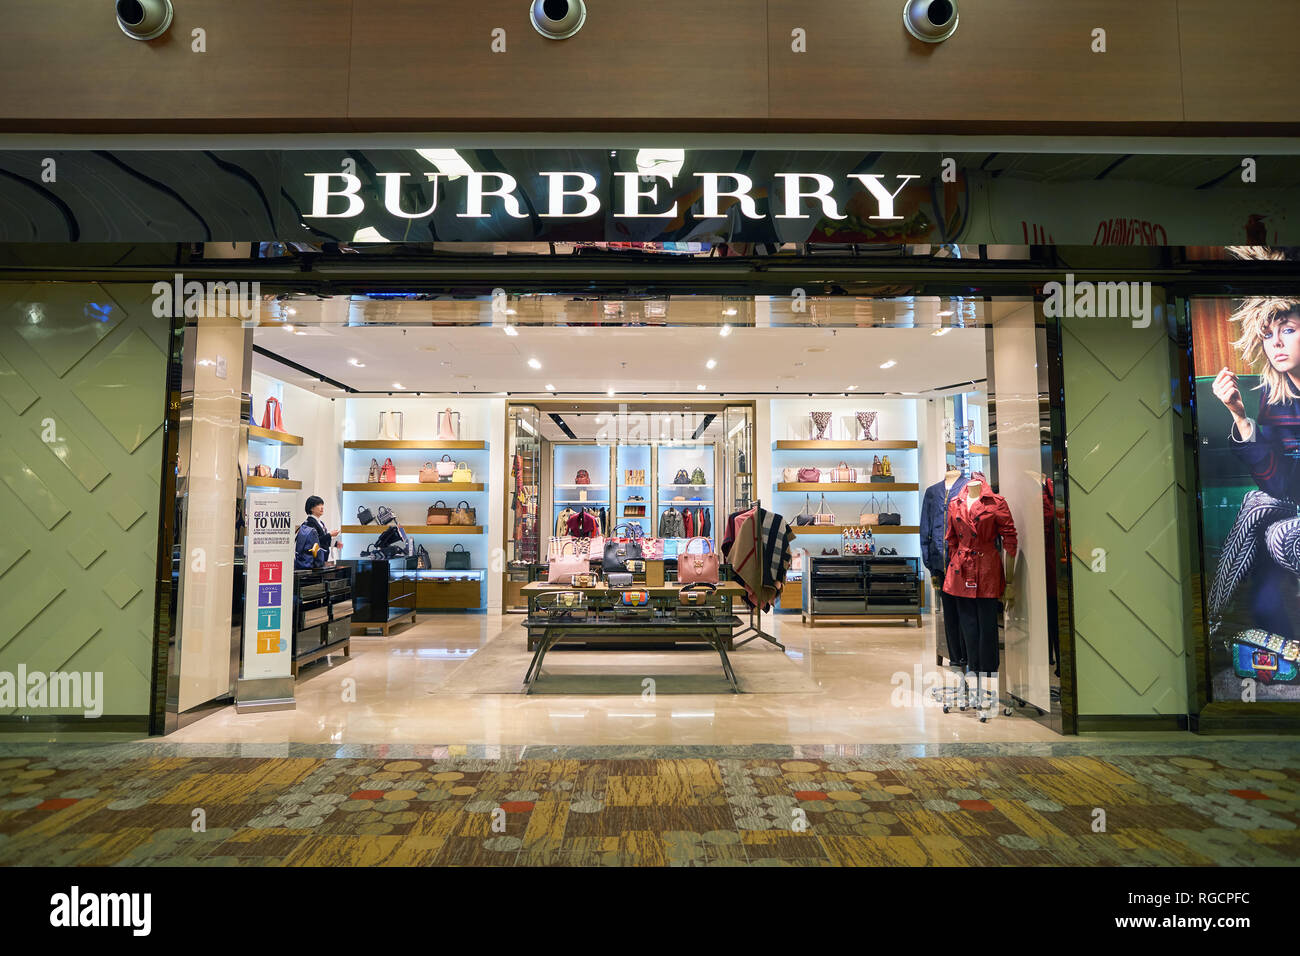 Singapour - circa 2016 SEPTEMBRE : Burberry magasin à l'aéroport de Singapour Changi. Burberry Group, Inc., est une maison de mode de luxe britannique. Banque D'Images